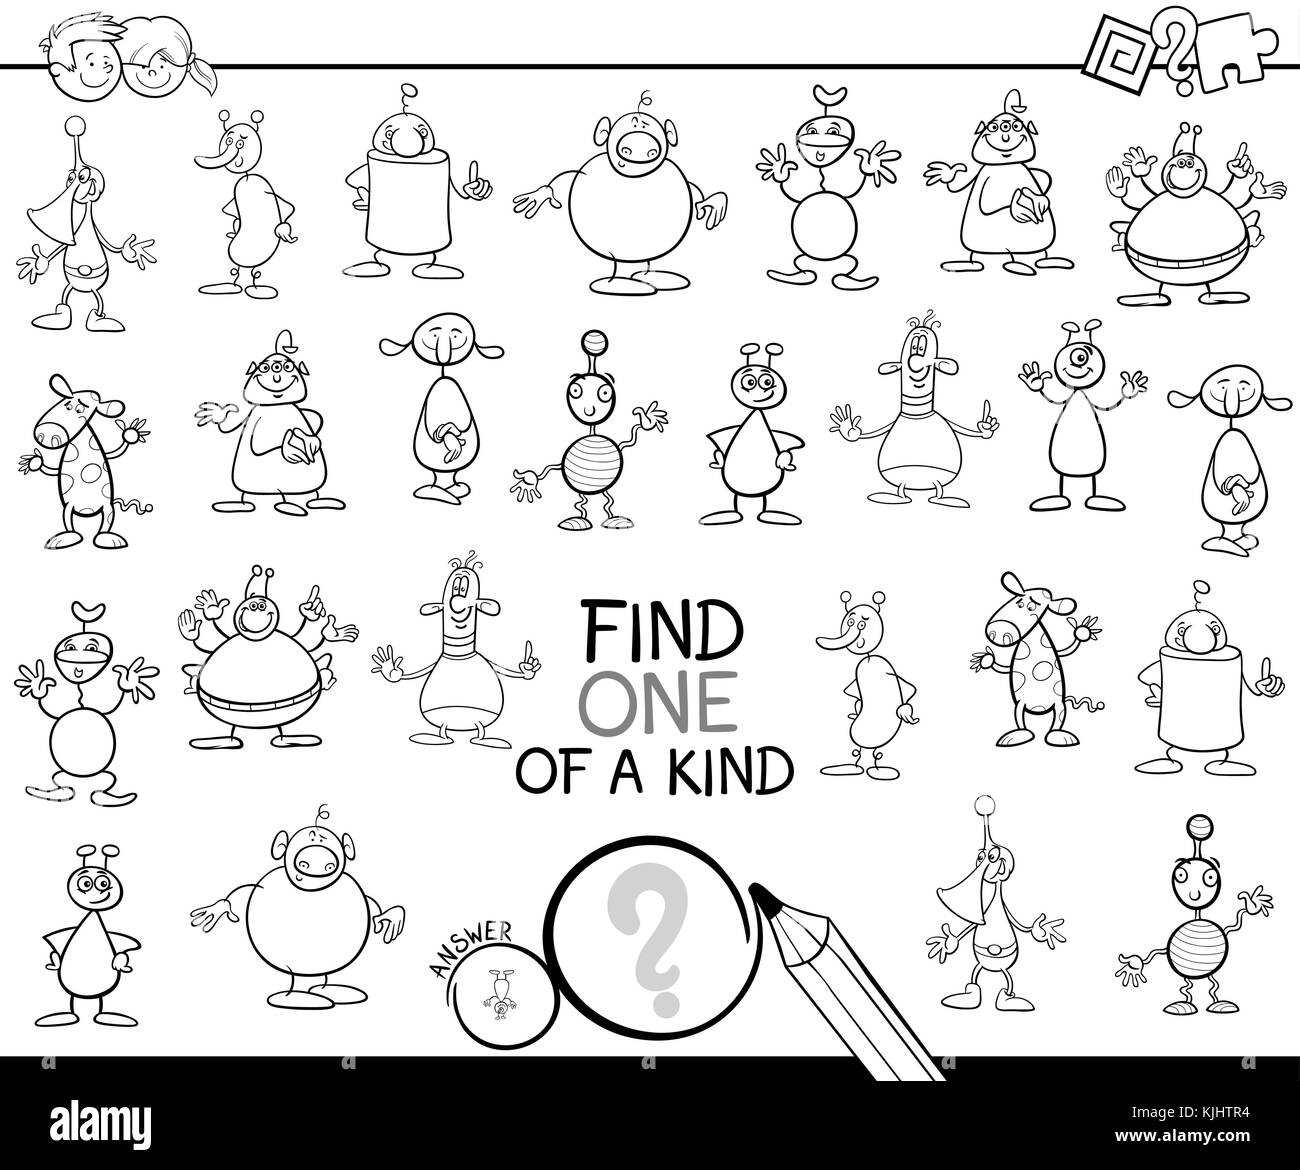 Bianco e nero cartoon cartoon illustrazione di trovare un tipo di attività educativa gioco per bambini con gli alieni personaggi di fantasia libro da colorare Illustrazione Vettoriale